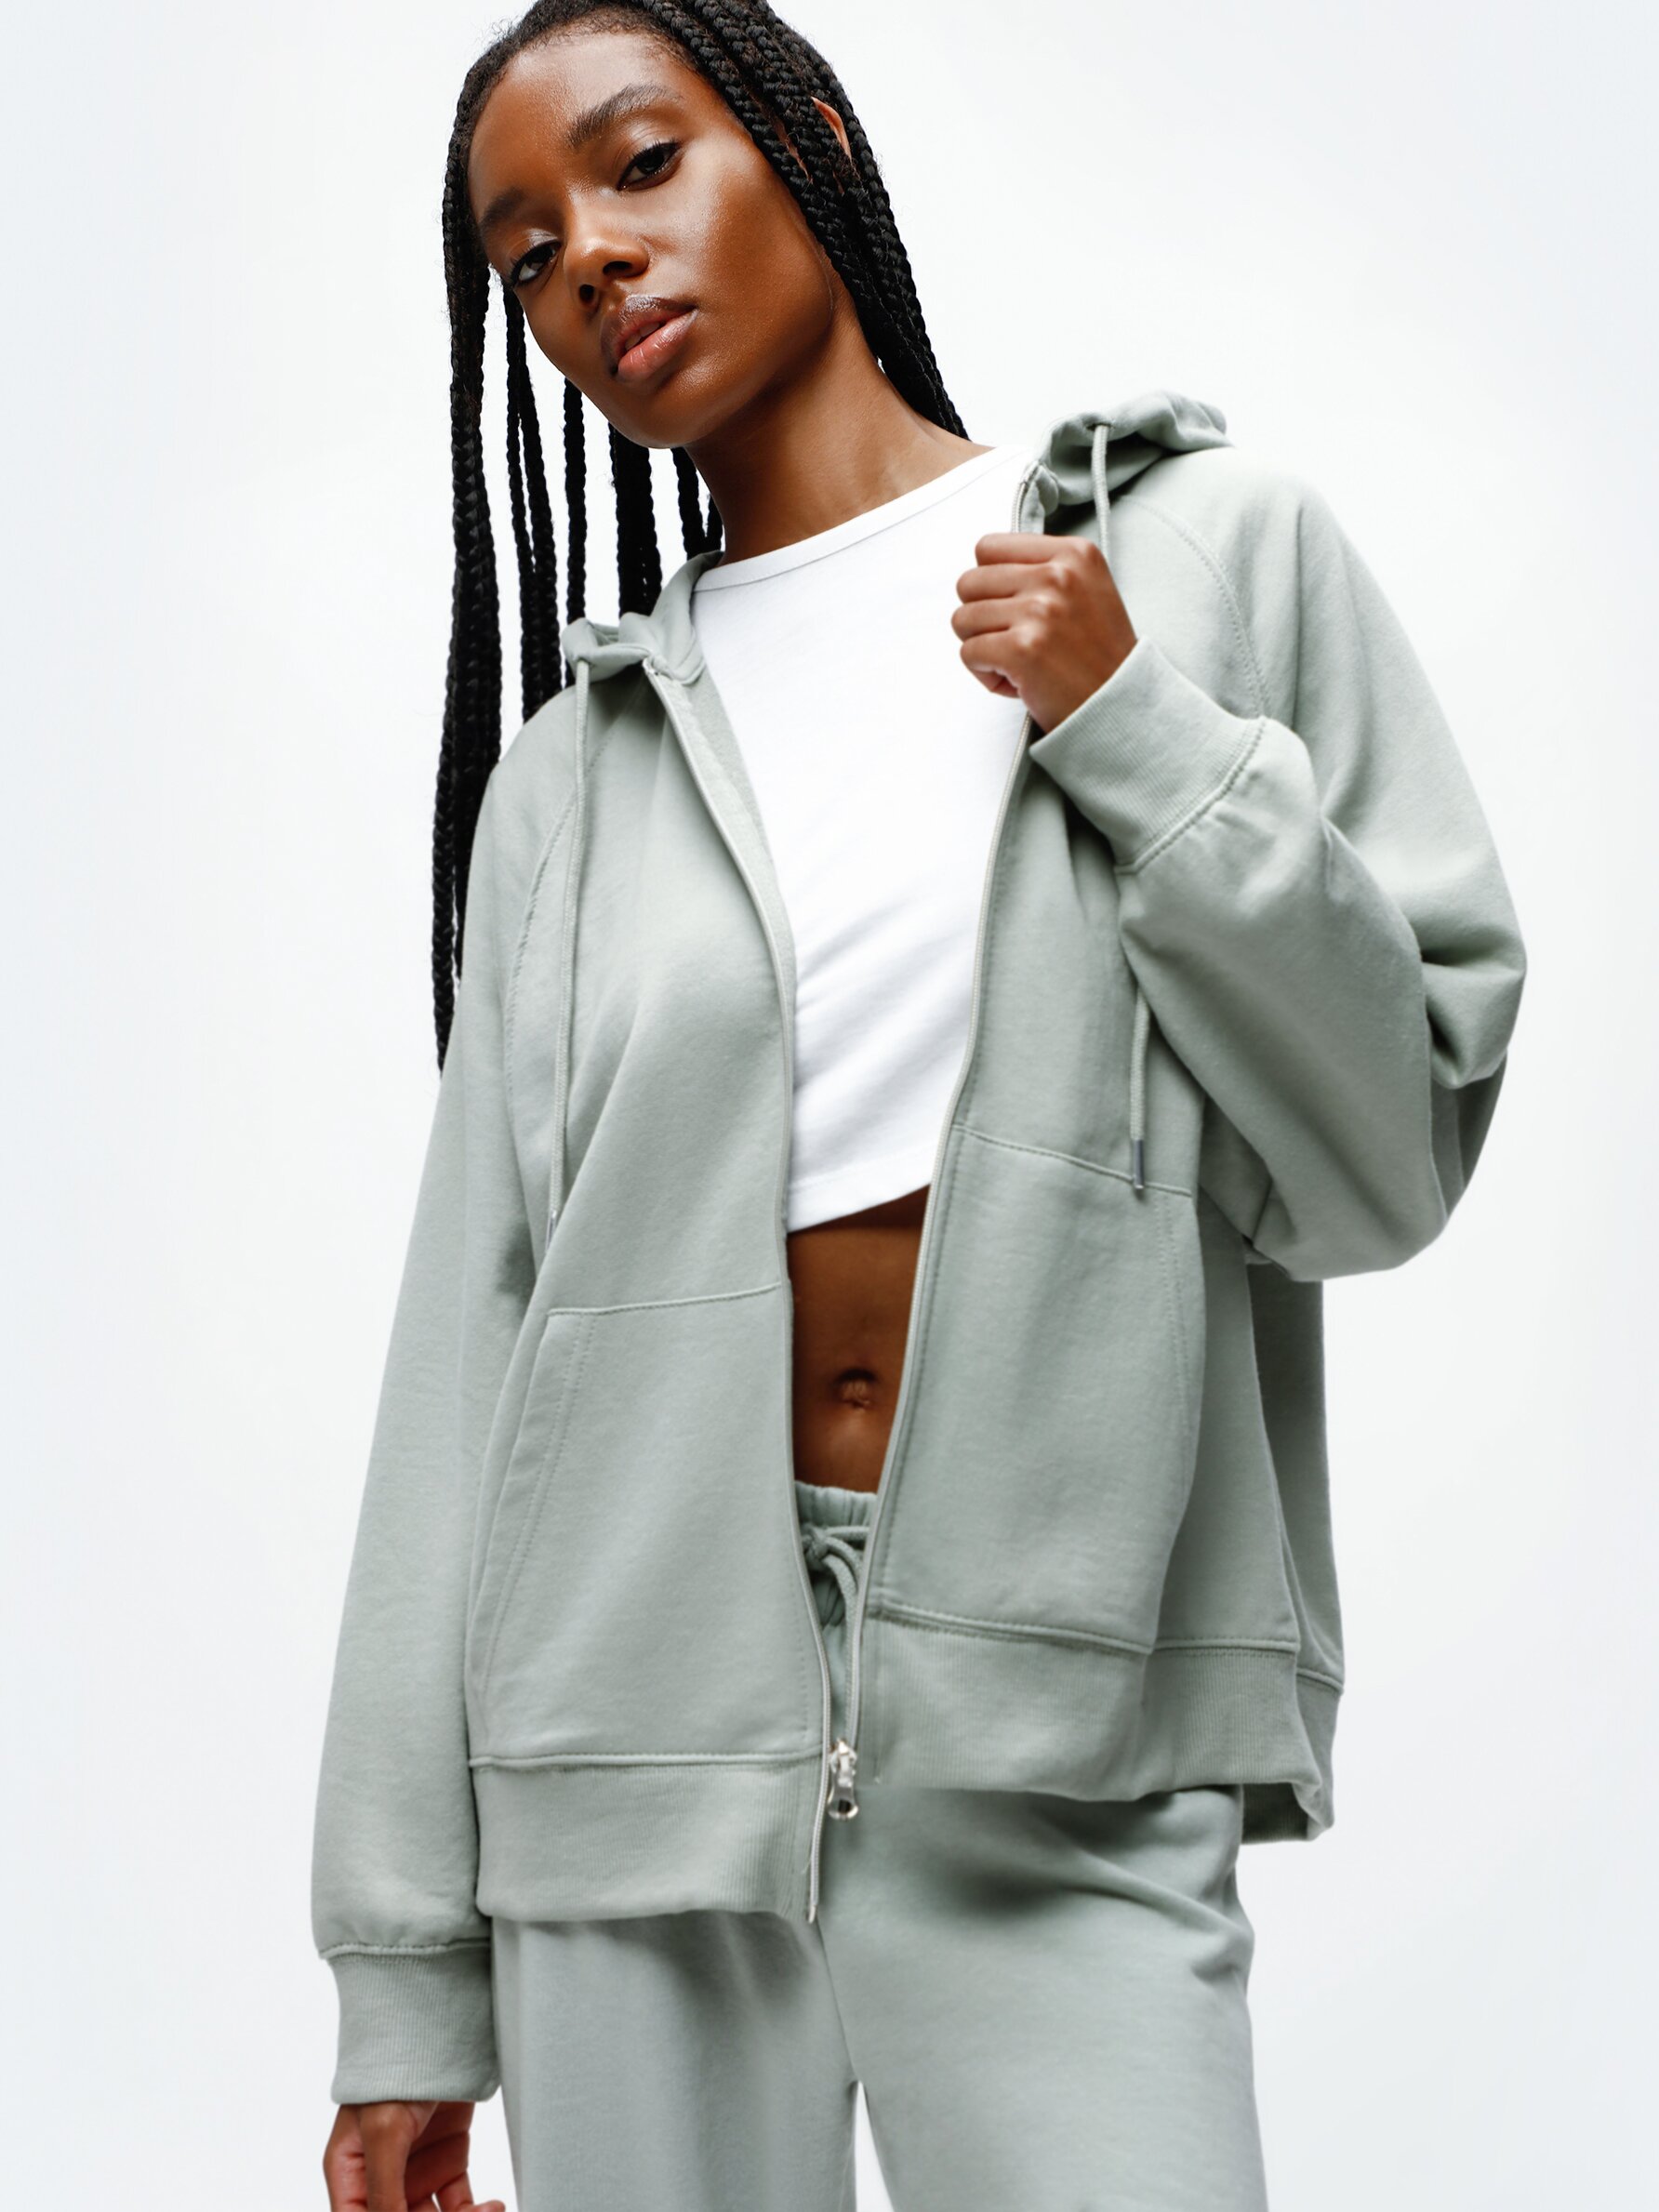 Sweatshirt jacket with zip - Hoodies - Sweatshirts - CLOTHING - Woman 